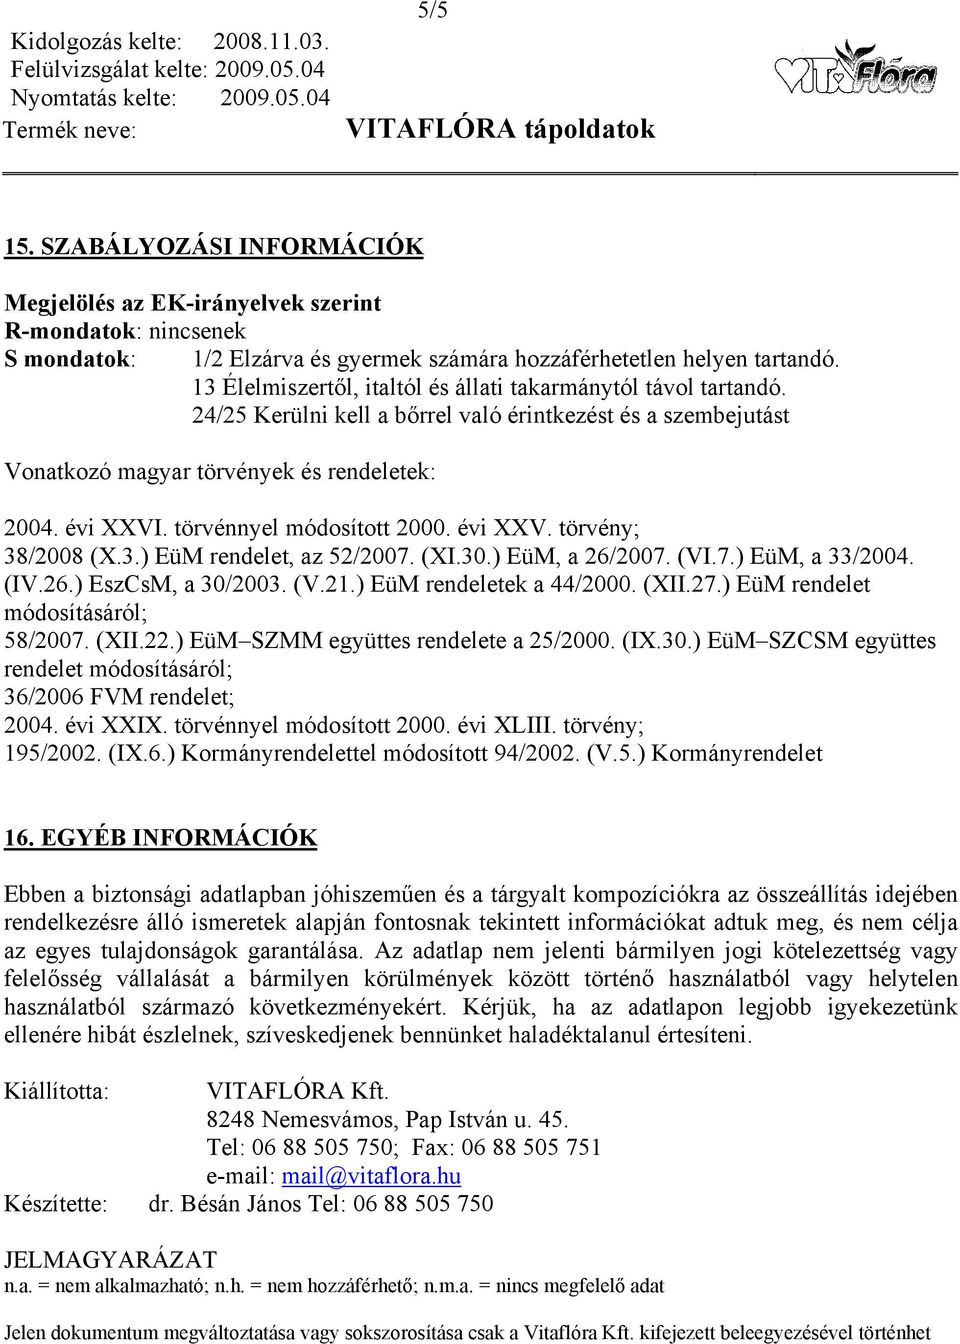 törvénnyel módosított 2000. évi XXV. törvény; 38/2008 (X.3.) EüM rendelet, az 52/2007. (XI.30.) EüM, a 26/2007. (VI.7.) EüM, a 33/2004. (IV.26.) EszCsM, a 30/2003. (V.21.) EüM rendeletek a 44/2000.